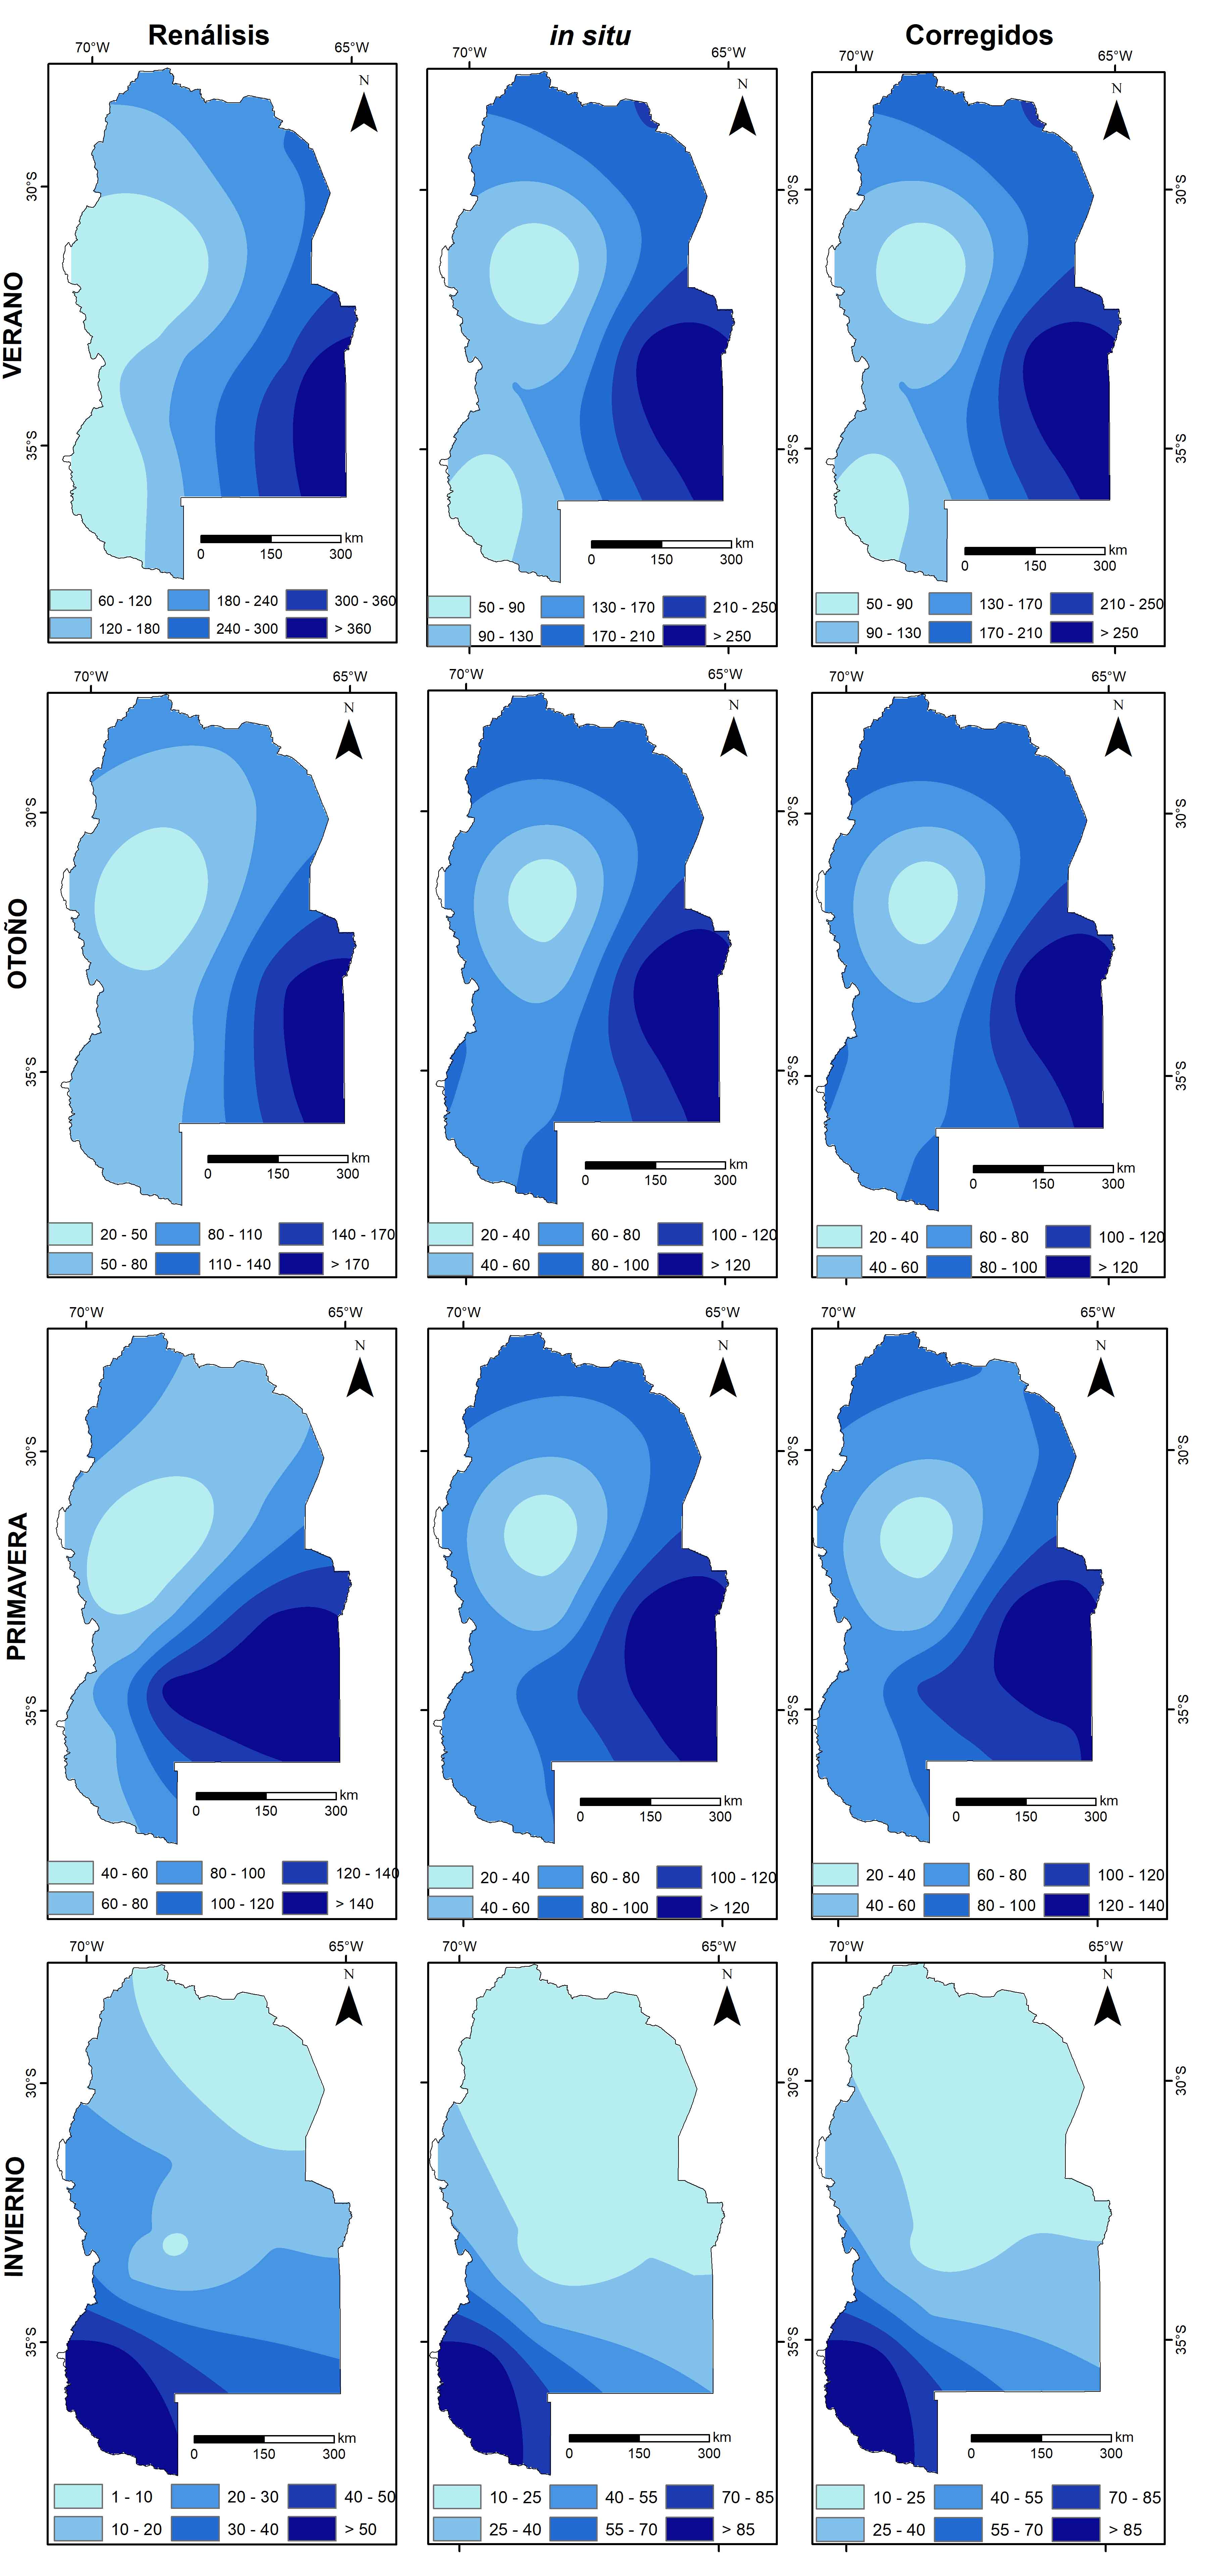 Distribución espacial la precipitación estacional,
considerando: i. Datos del Reanálisis, ii. Datos
medidos In situ y iii. Datos corregidos.
Período de testeo (2001-2020).